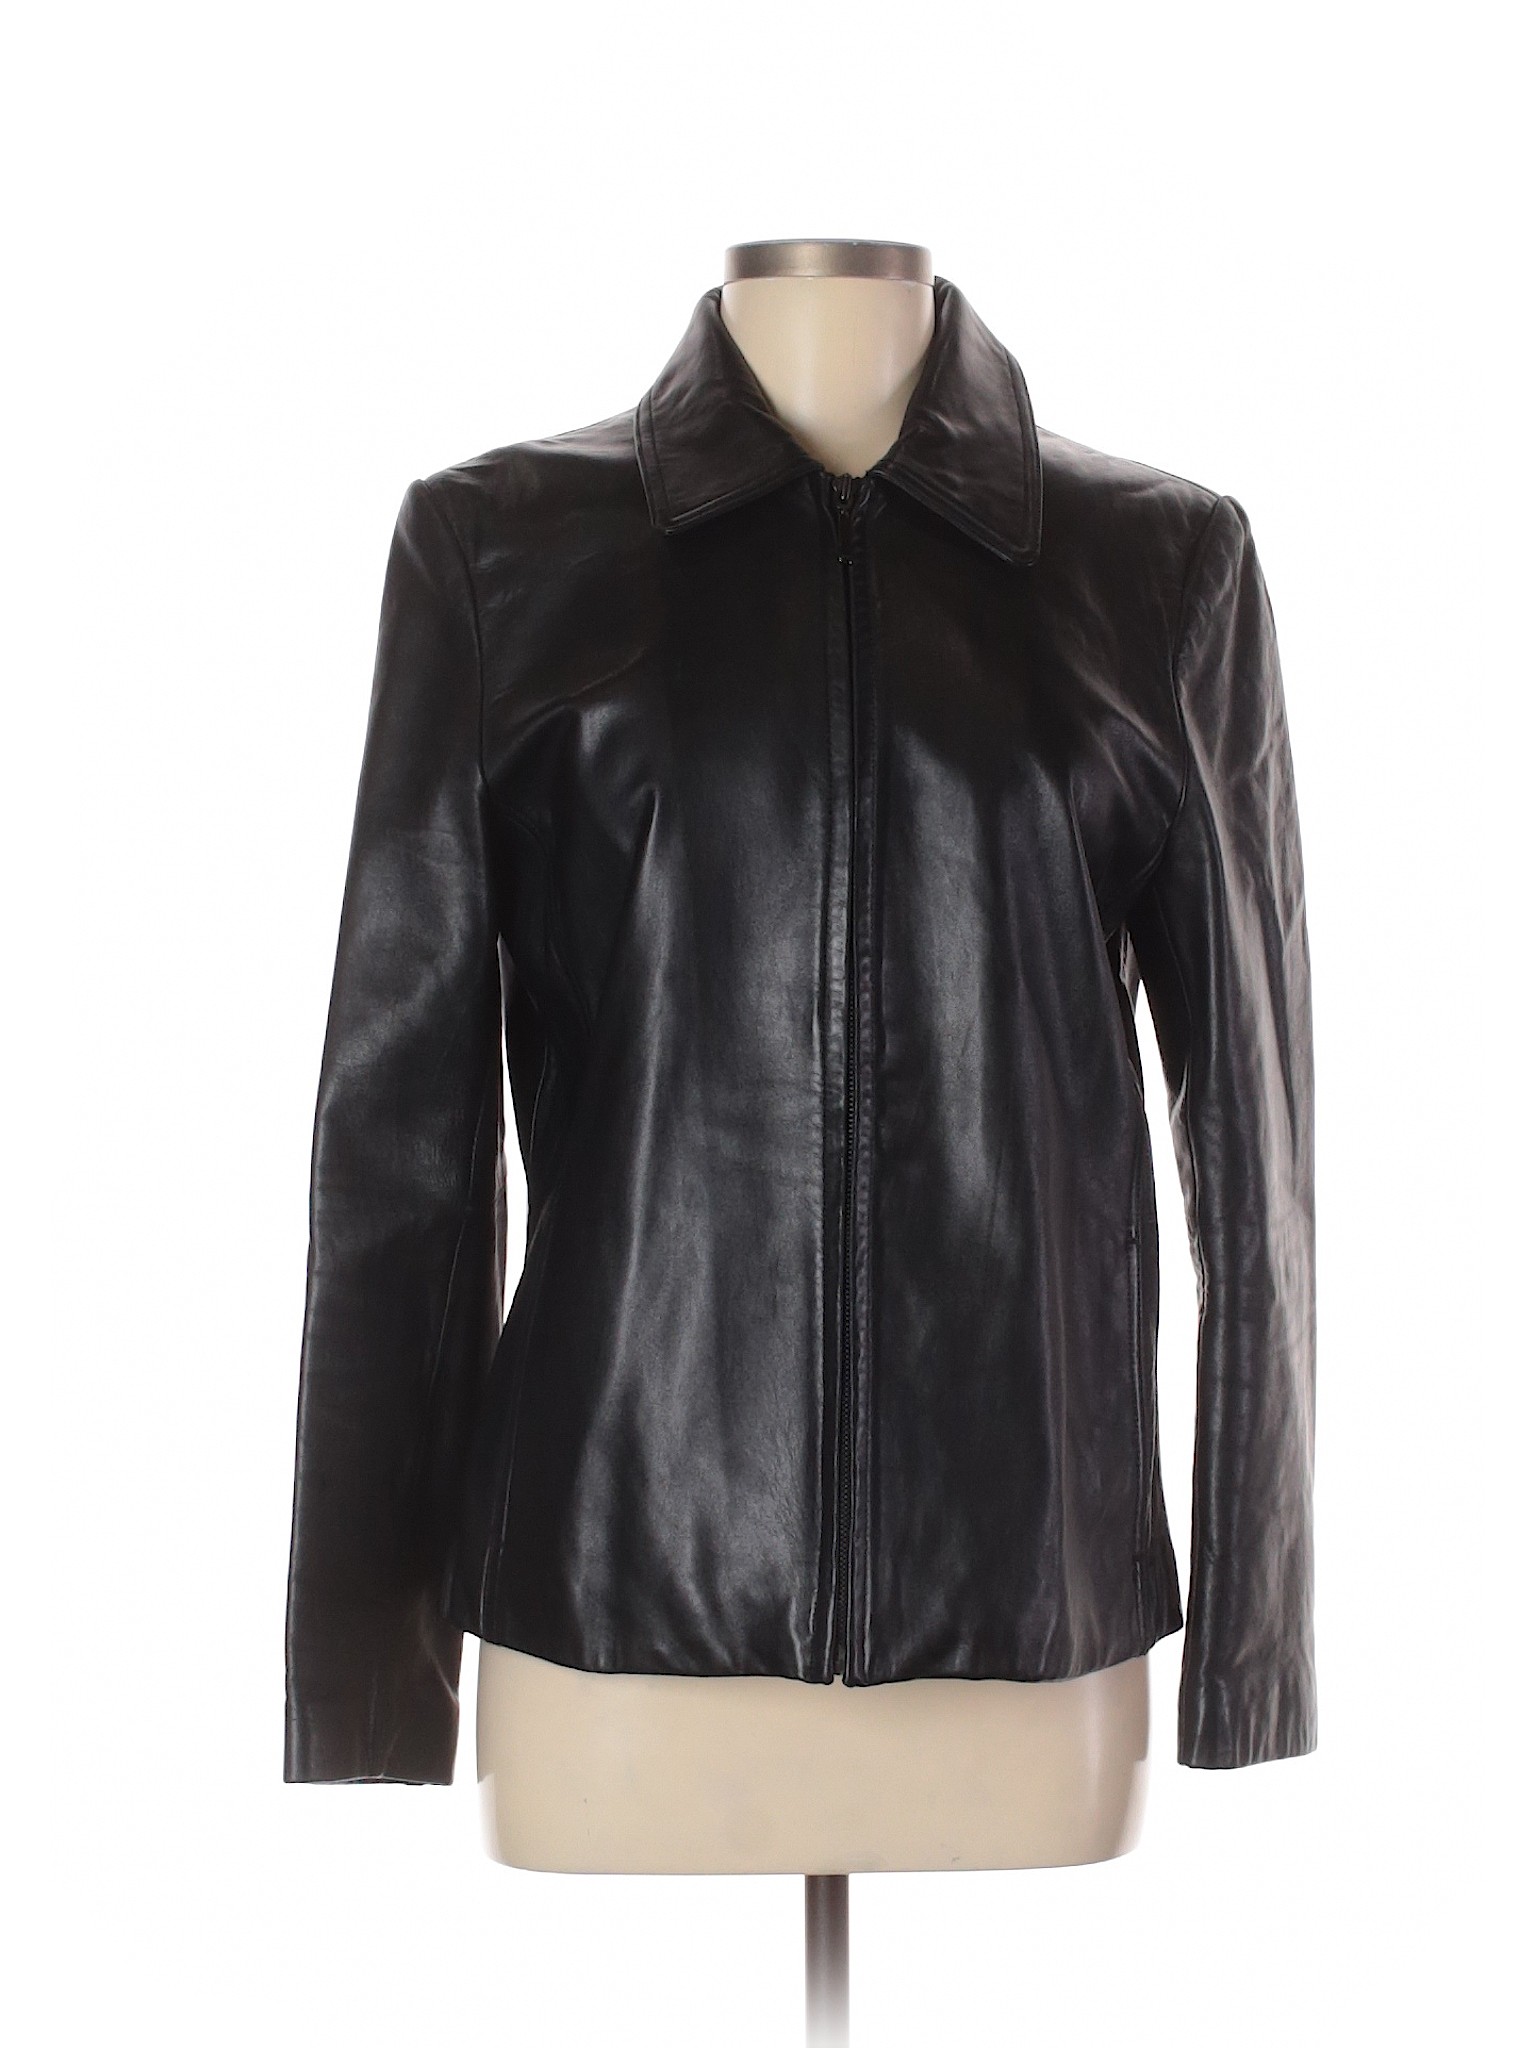 Nine West Women Black Leather Jacket M | eBay